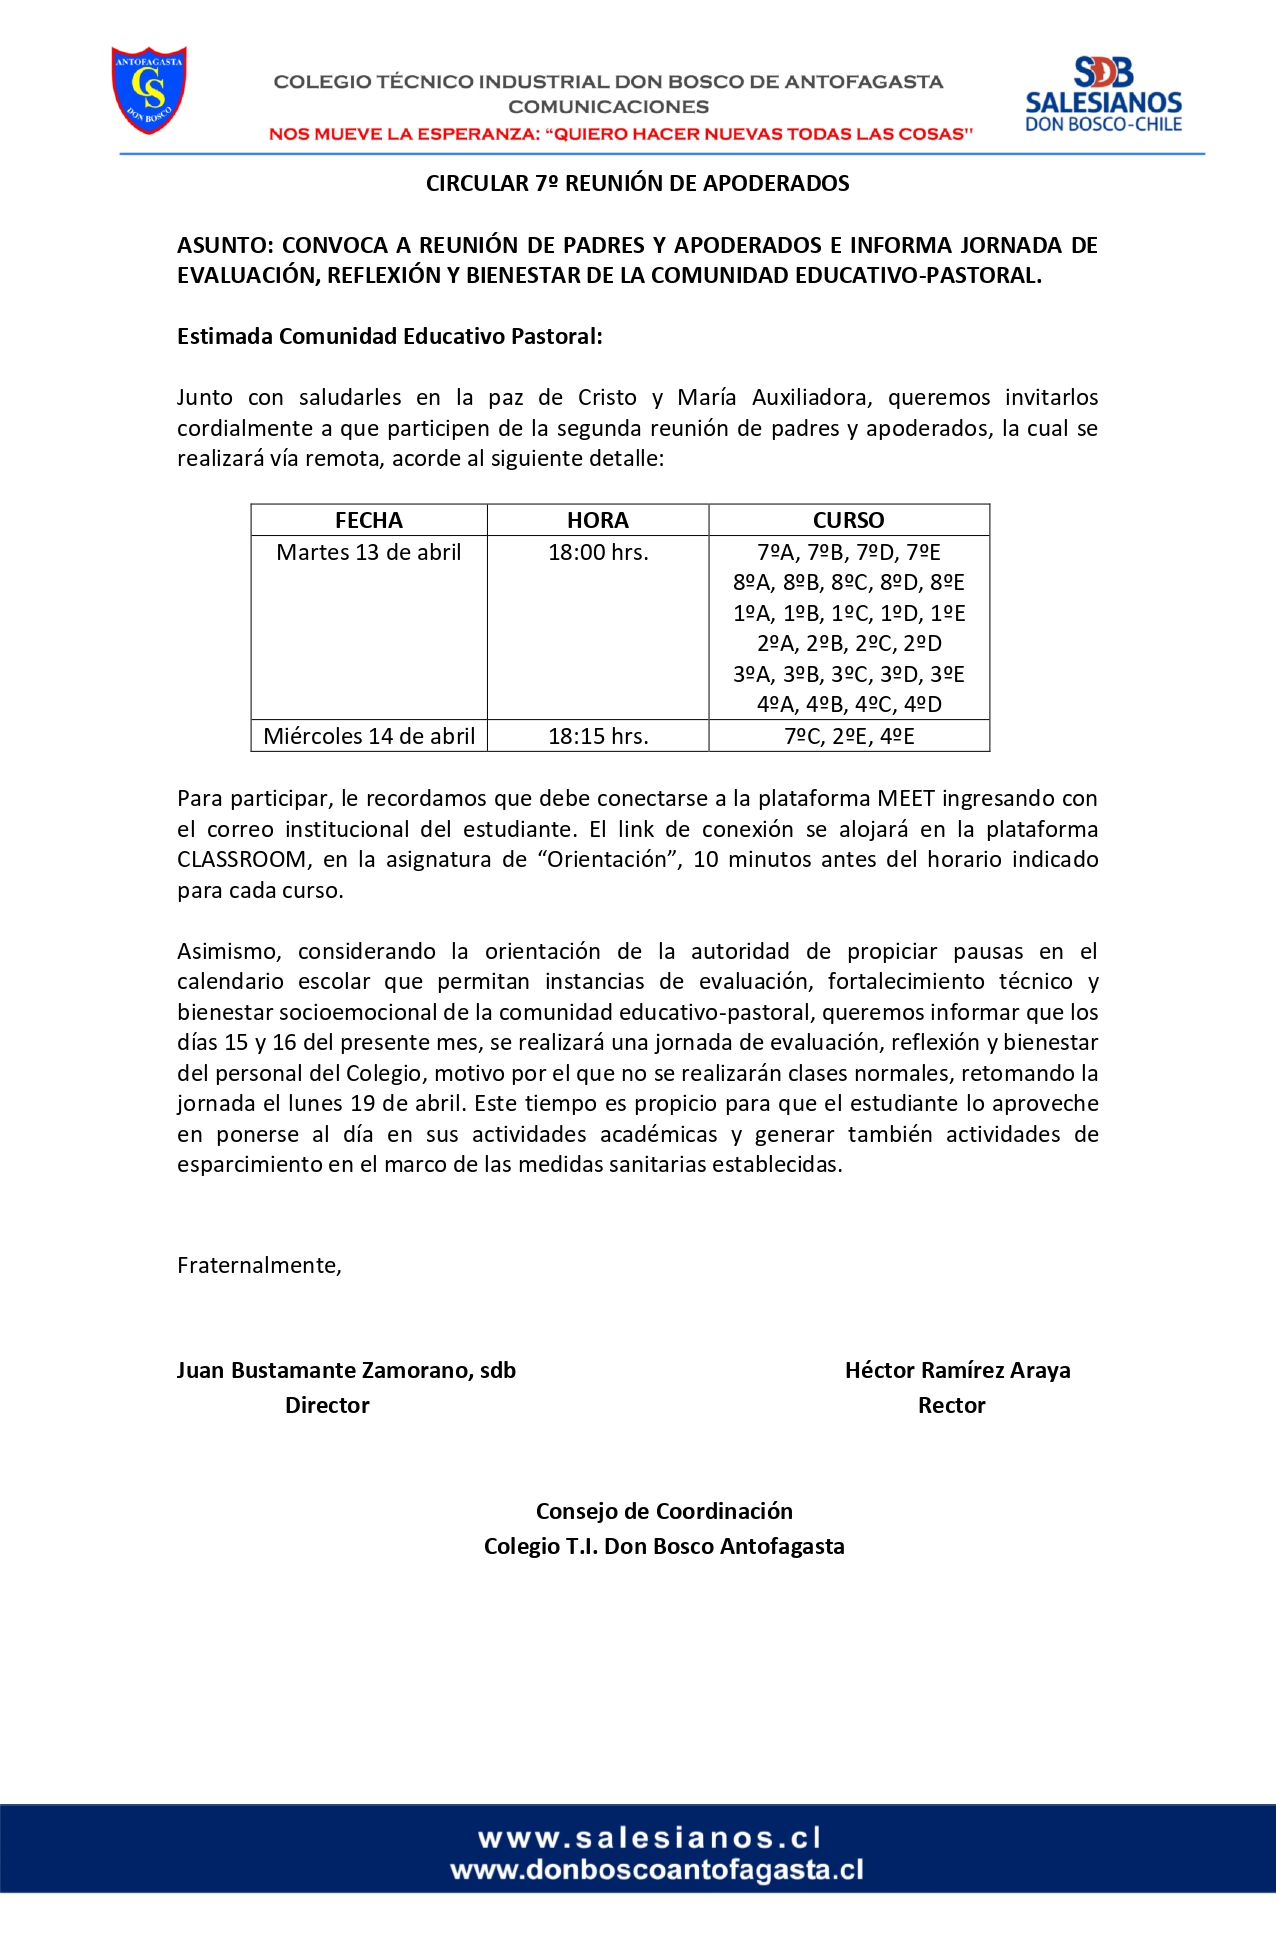 CIRCULAR Nº7 INFORMA REUNIÓN DE PADRES Y APODERADOS 13 DE ABRIL DE 2021 page 0001